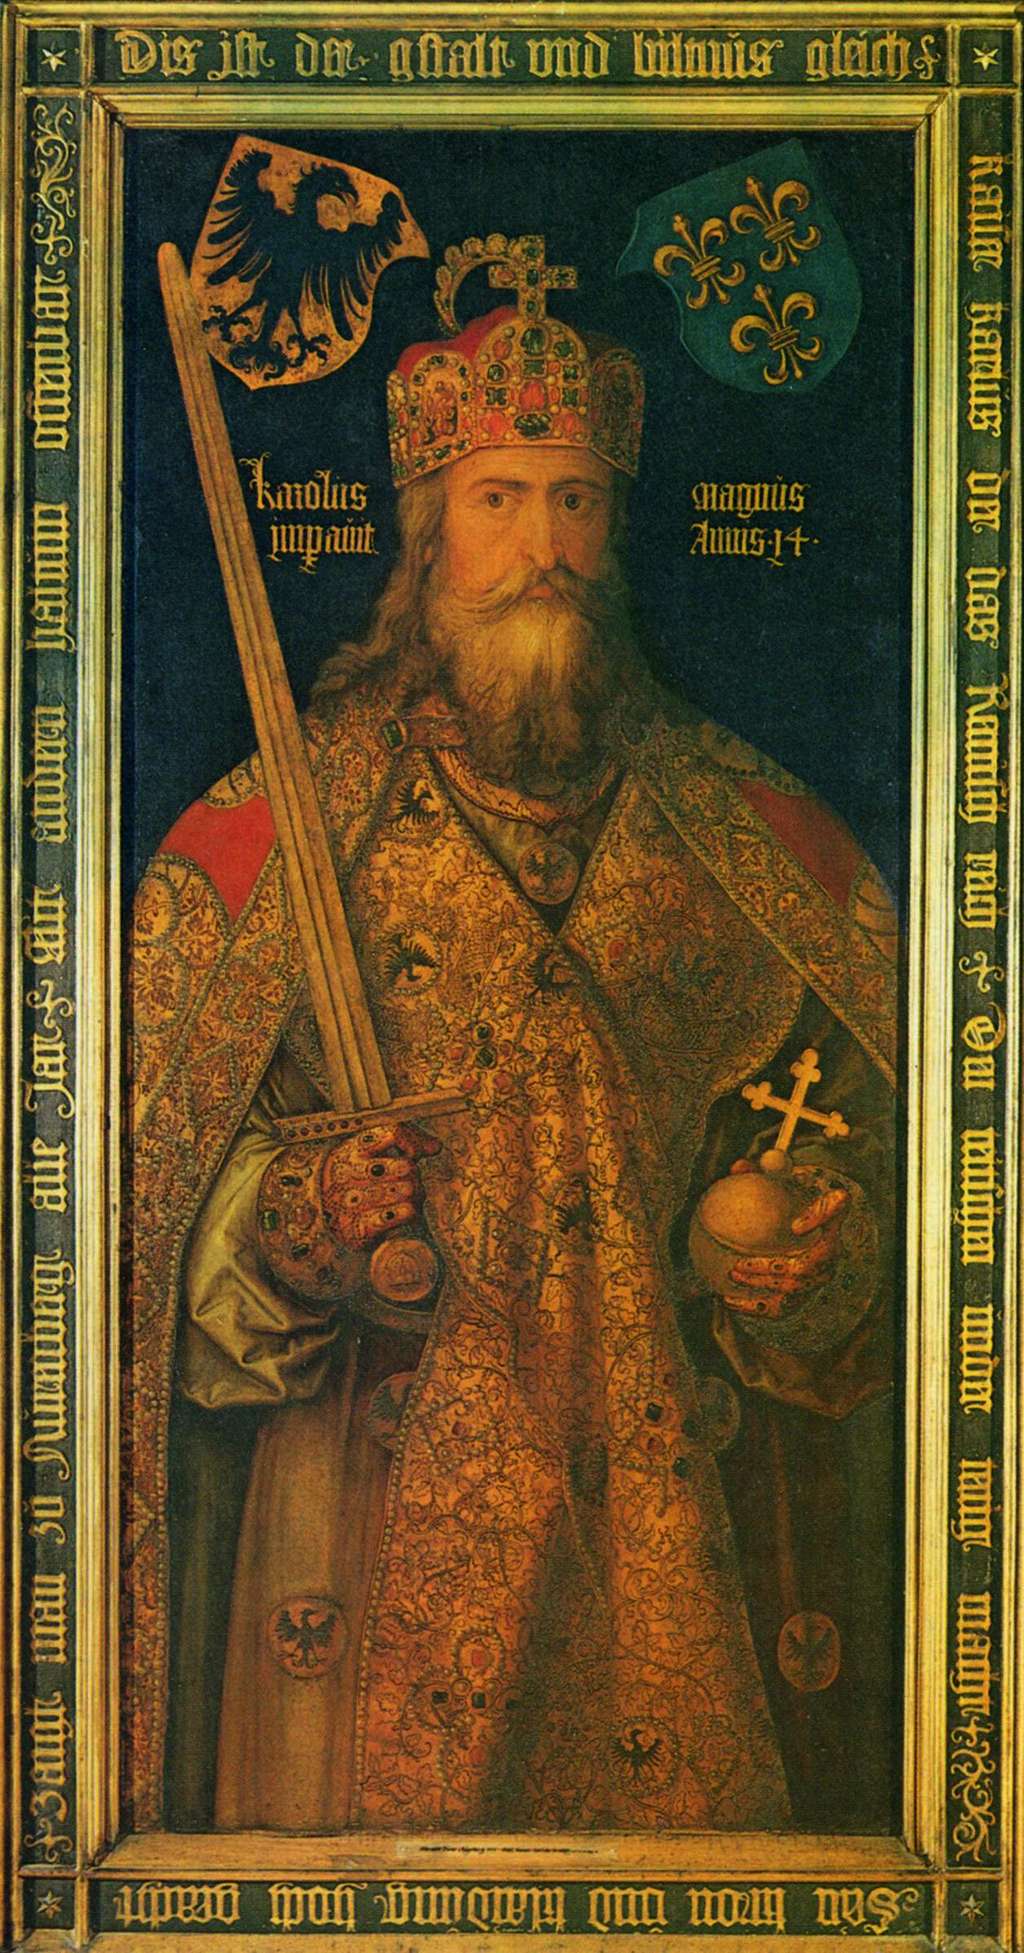 Portrait de Charlemagne réalisé pendant la Renaissance : l'empereur y est idéalisé et représenté comme père de l'Allemagne et de la France. © DR